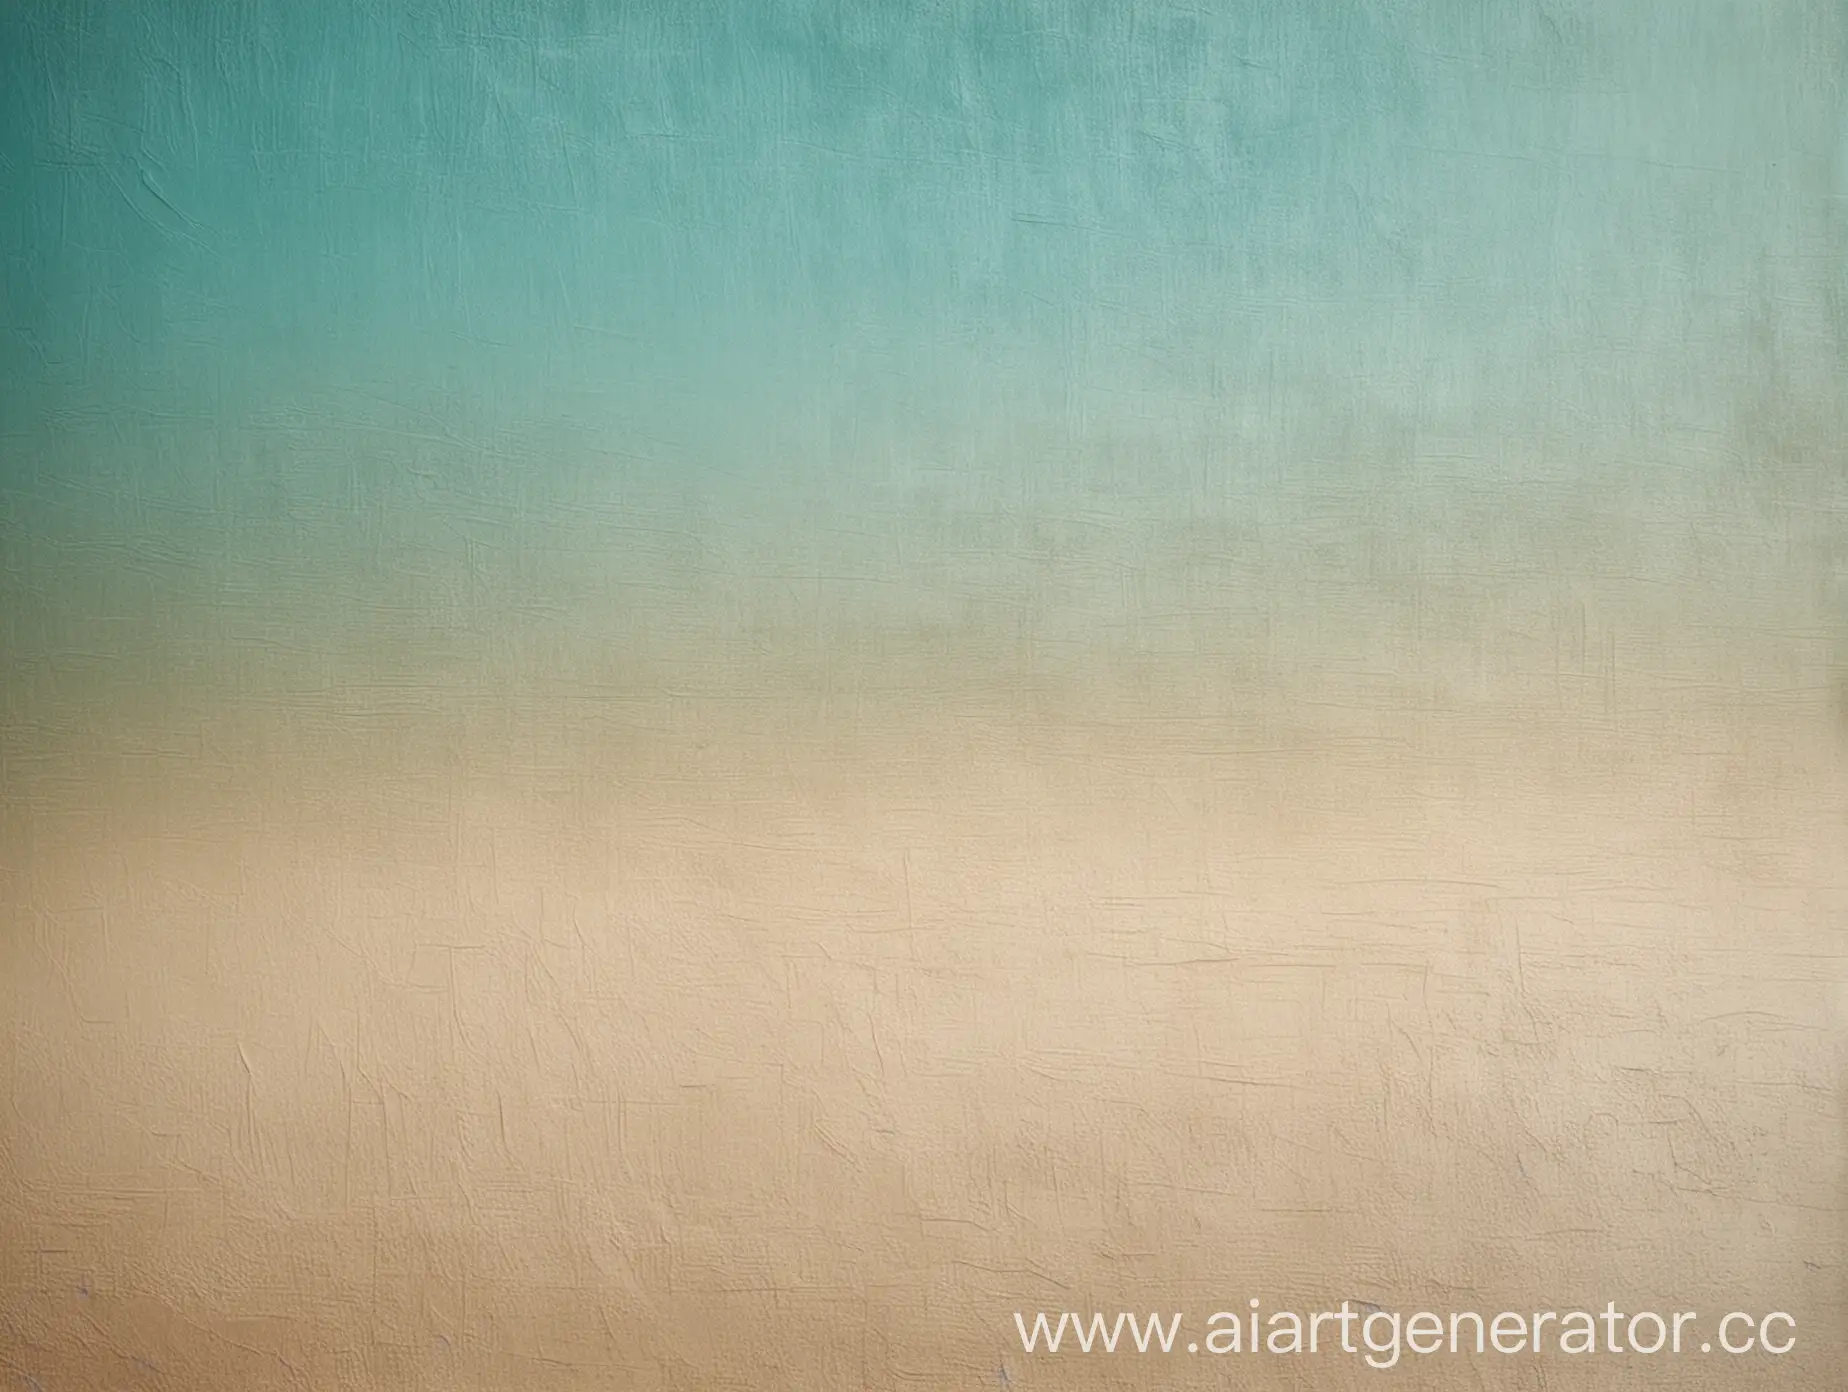 фоновое изображение - градиент и переливы оттенков бирюзового и бежевого цветов, зернистость